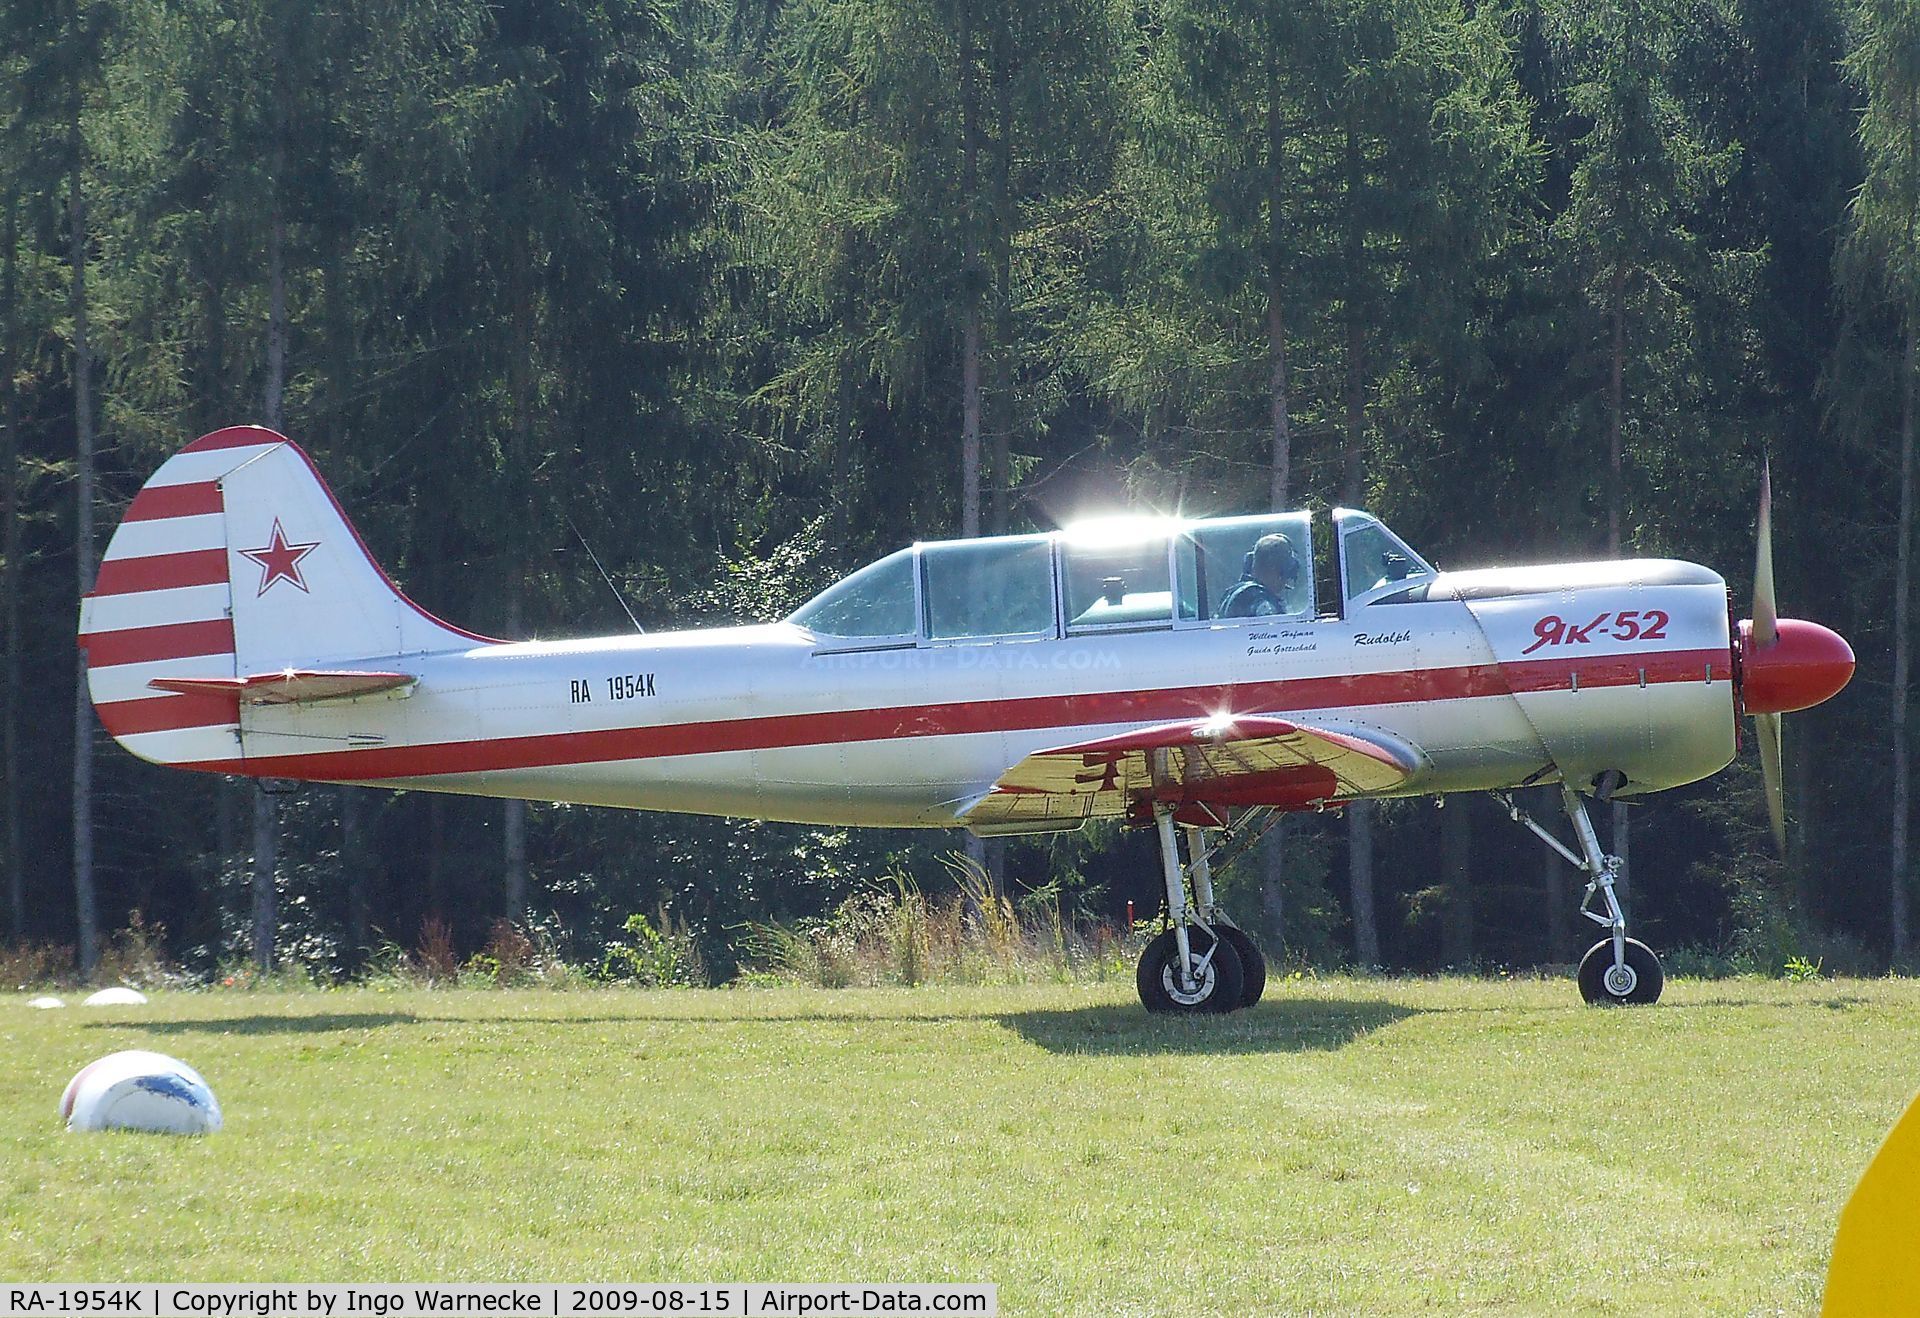 RA-1954K, 1987 Yakovlev Yak-52 C/N 877714, Yakovlev Yak-52 at the Montabaur airshow 2009